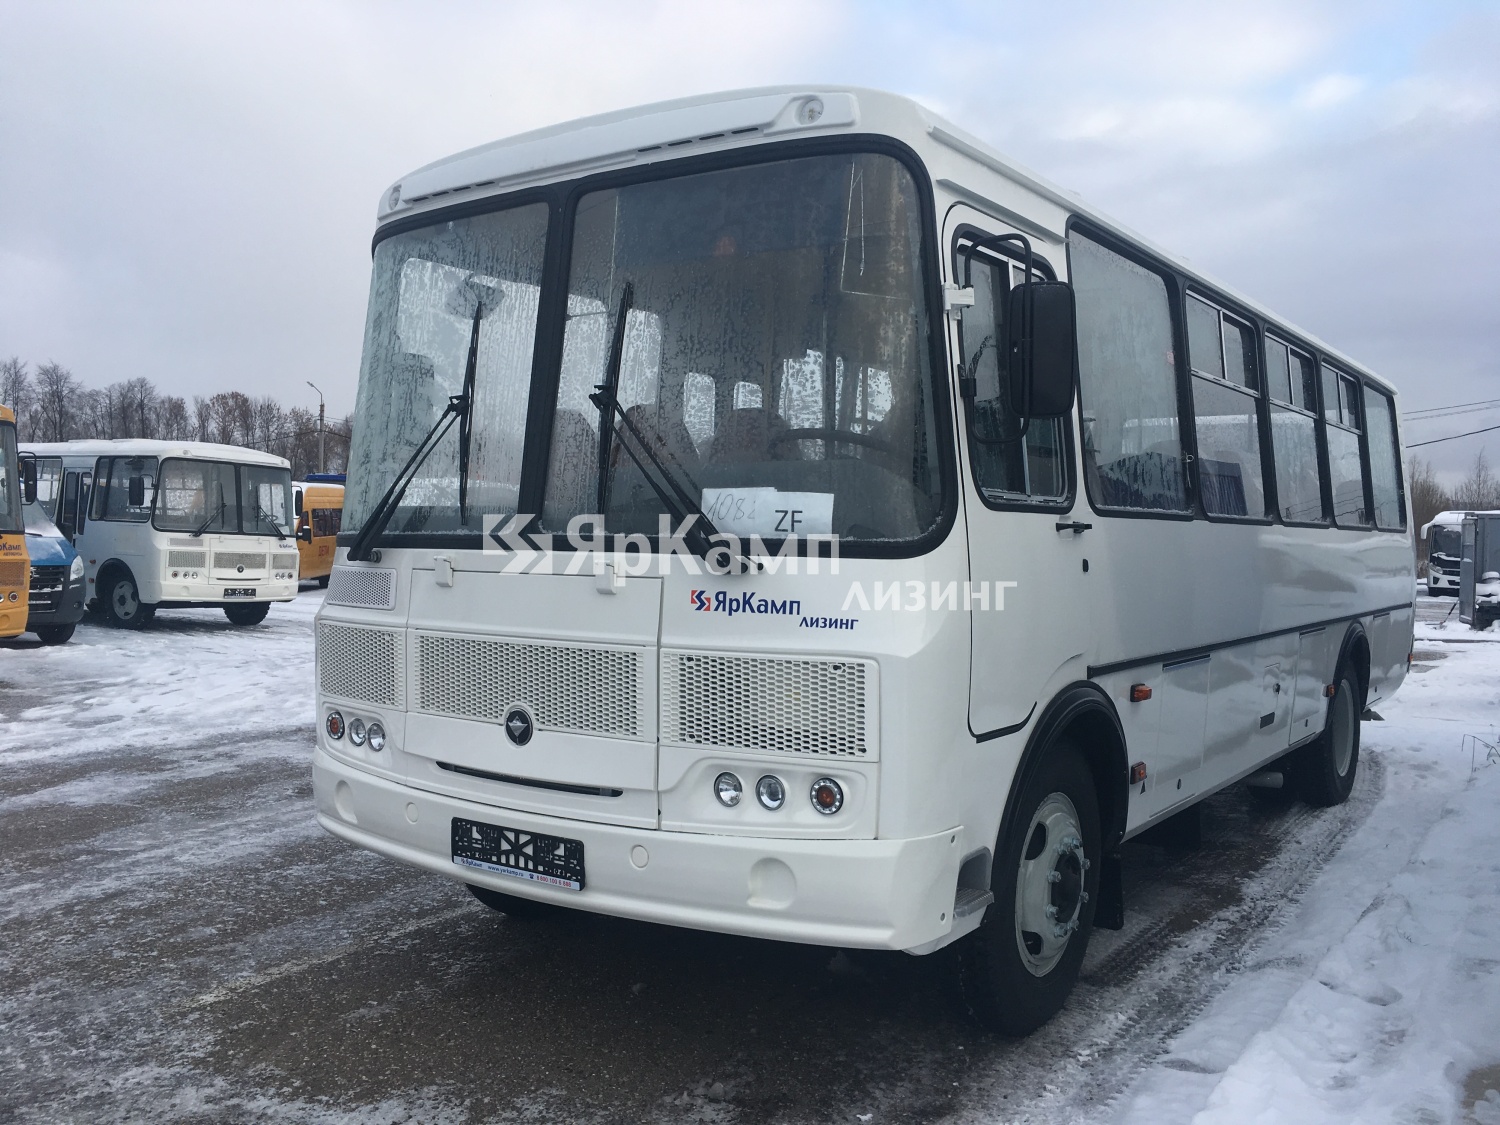 Автобус малого класса ПАЗ 32054 поставлен в финансовую аренду